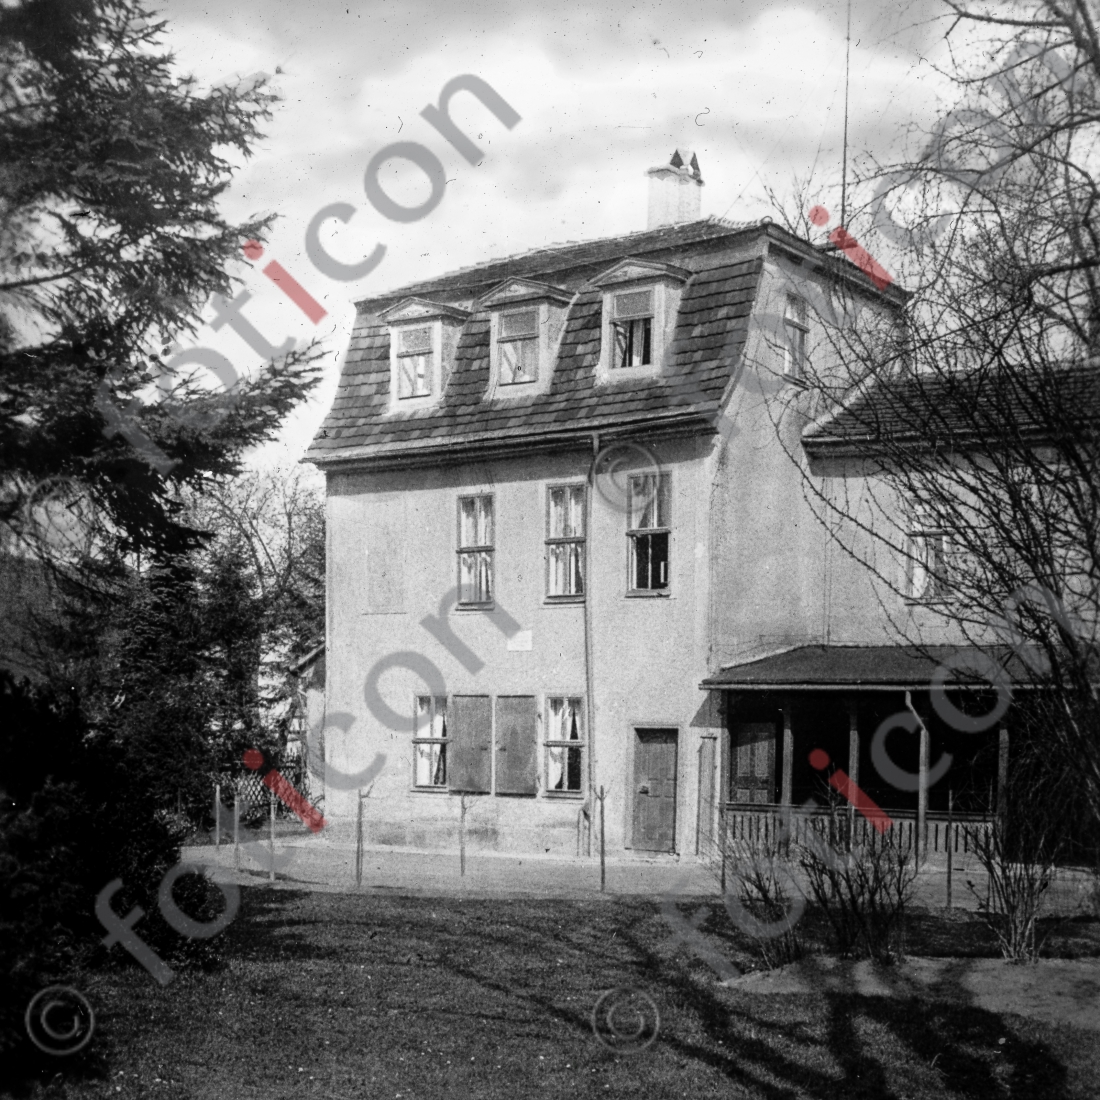 Schillers Gartenhaus | Schiller&#039;s garden house - Foto simon-156-044-sw.jpg | foticon.de - Bilddatenbank für Motive aus Geschichte und Kultur